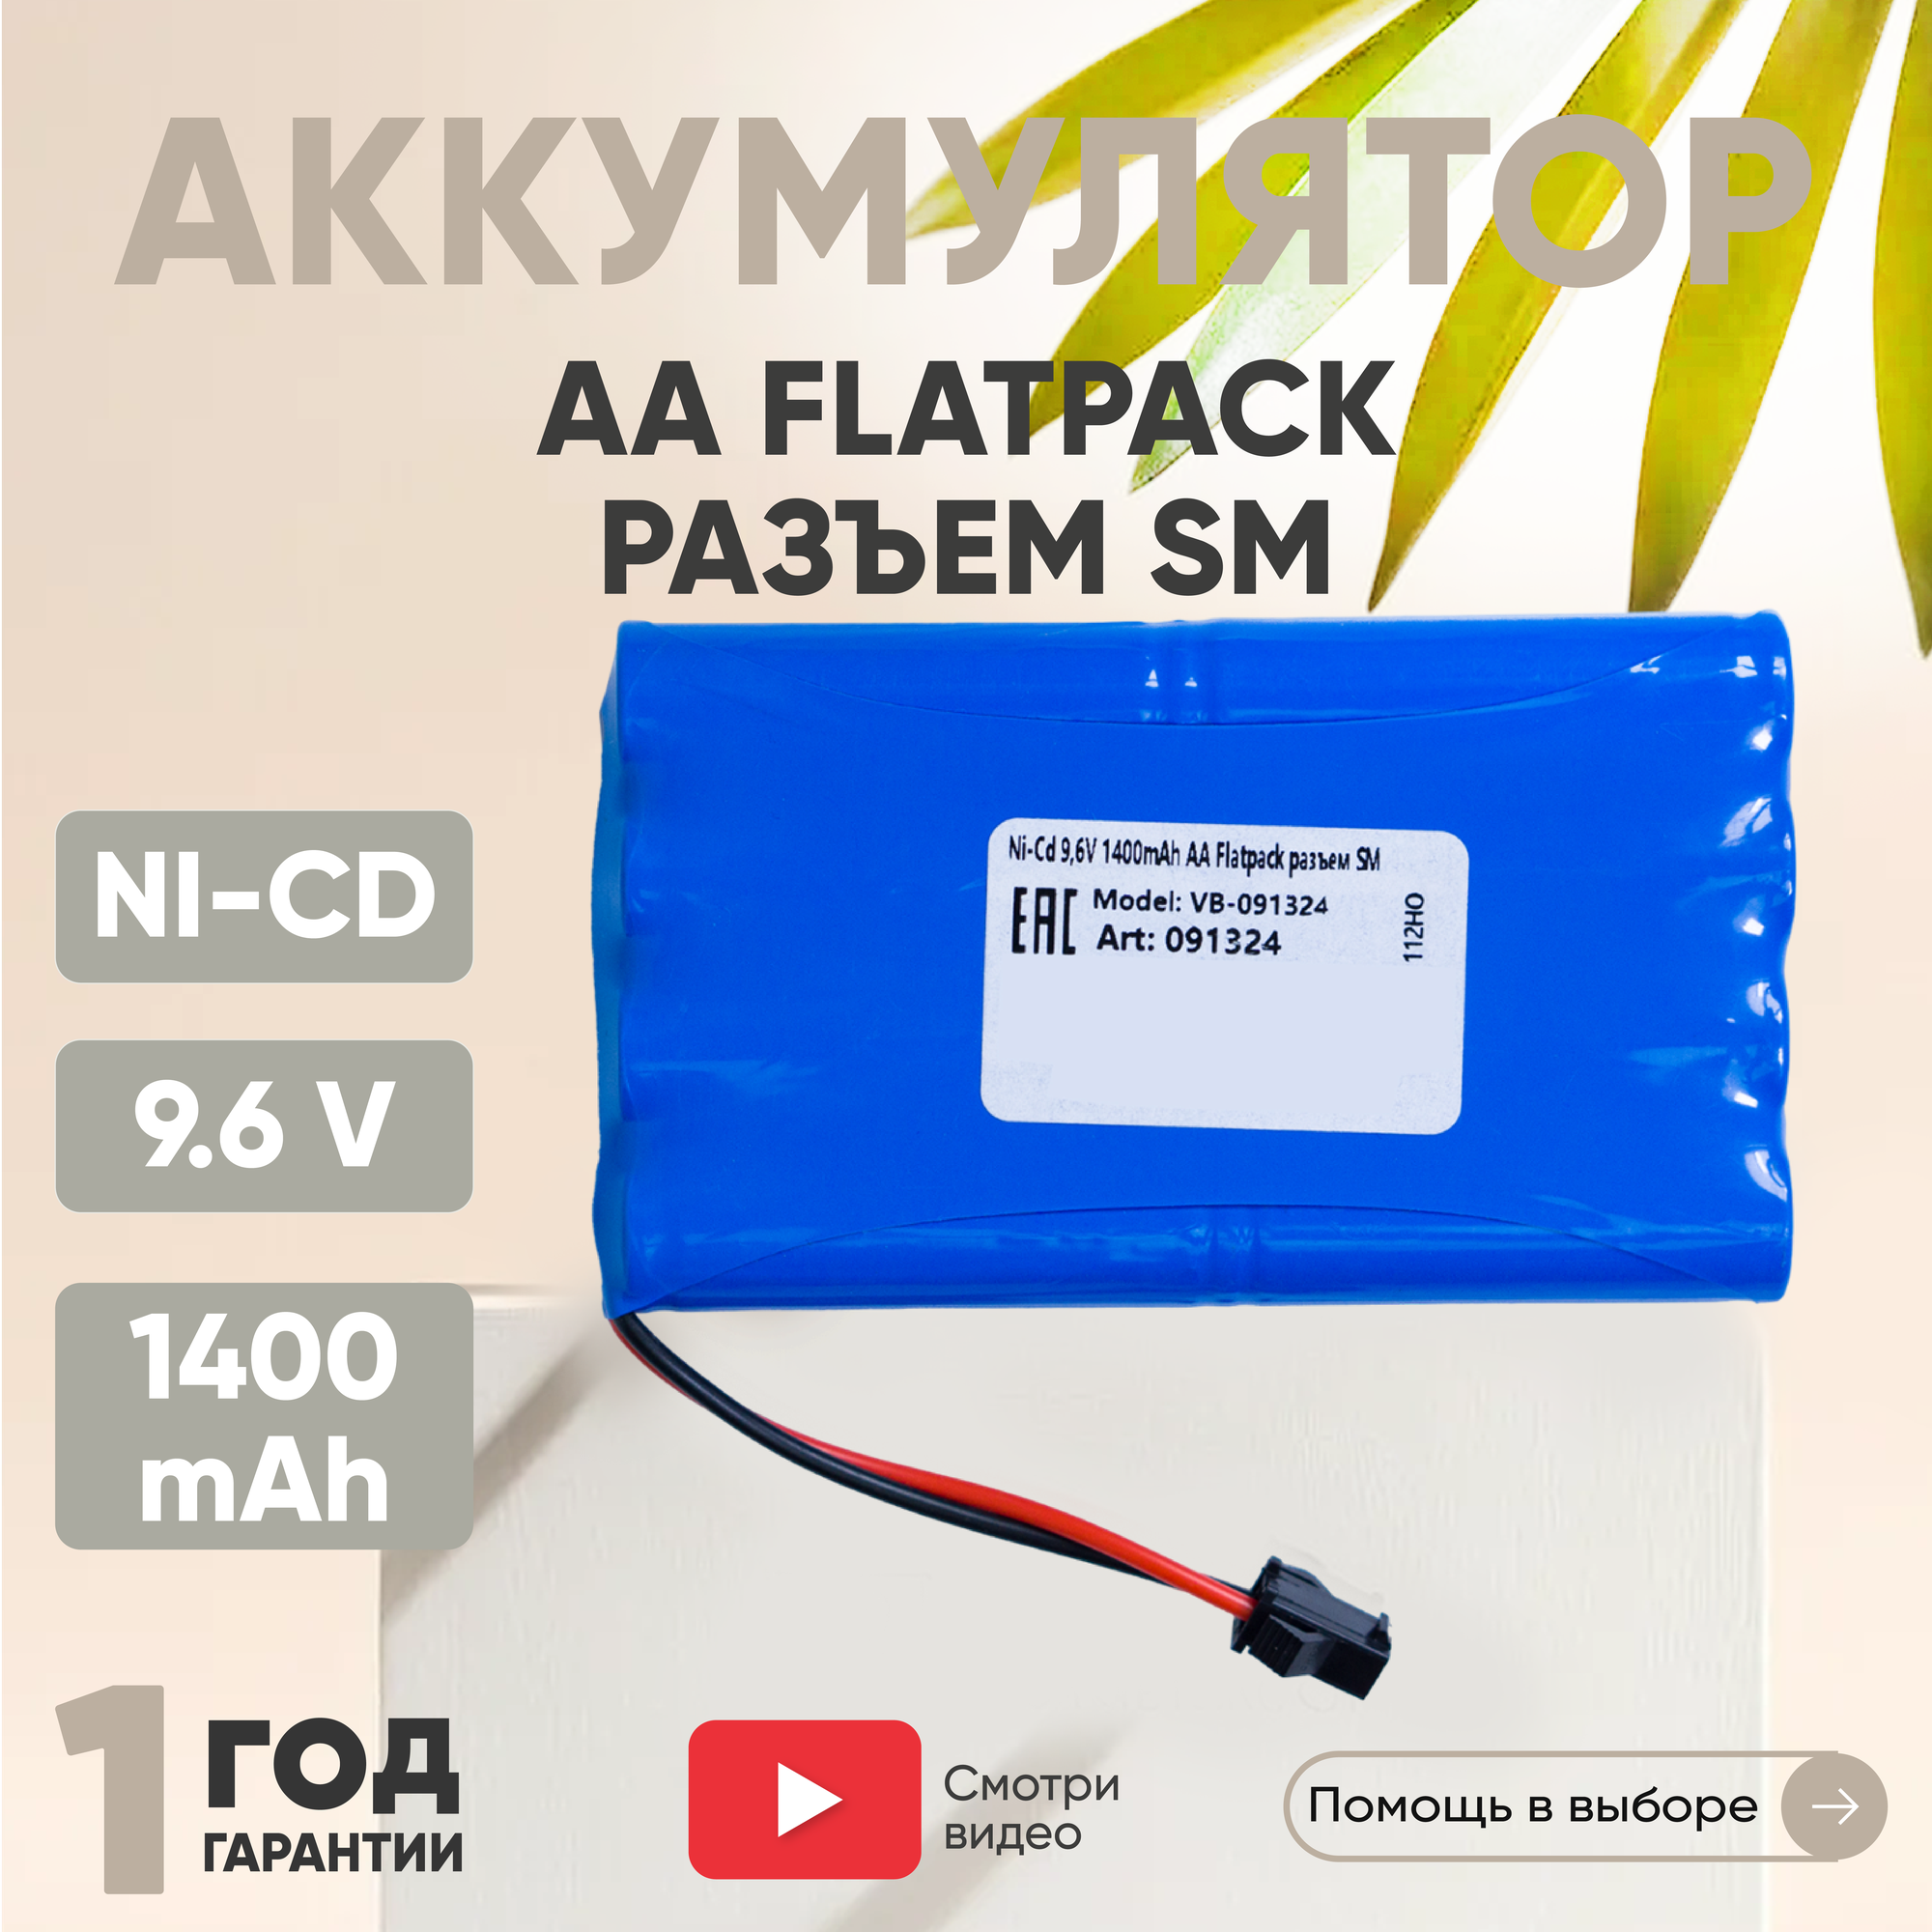 Аккумуляторная батарея (АКБ, аккумулятор) для радиоуправляемых игрушек / моделей, AA Flatpack, разъем SM, 9.6В, 1400мАч, Ni-Cd